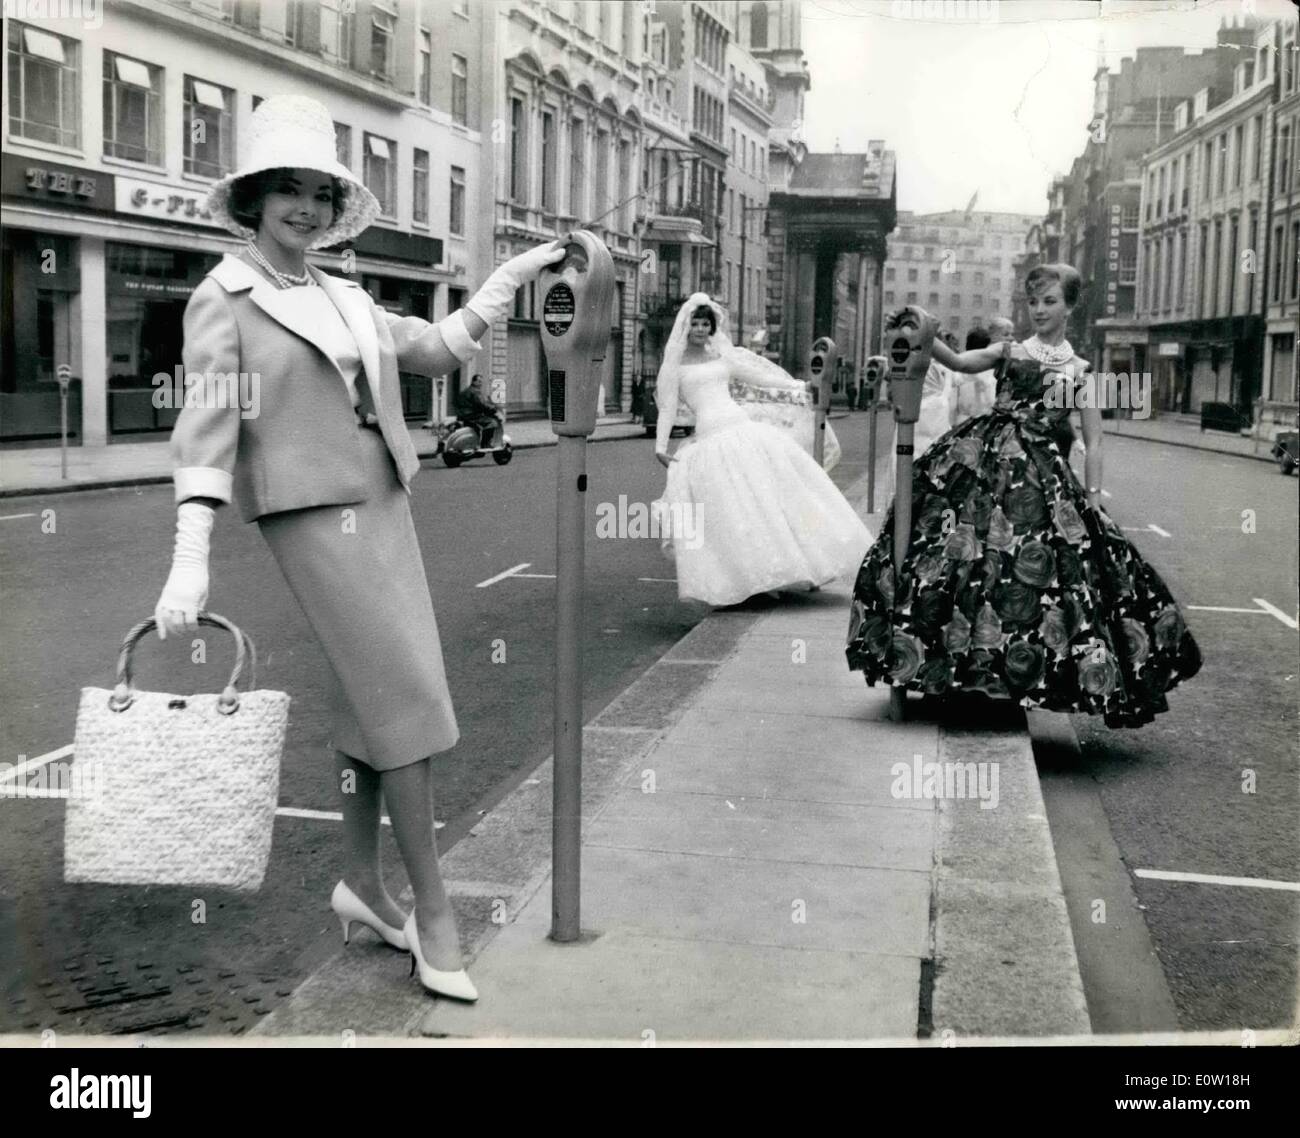 11 novembre 1960 - DÉFILÉ MANNEQUIN EN PLEIN AIR - dans la région de Hanover Square... Passere par ont été surpris hier quand ils ont vu cette apparition--in London's Hanover Square-hier...les belles jeunes femmes étaient titulaires d'un affichage en plein air des plus récentes lignes de transport de la mode pour 1961 - une répétition pour l'ouverture de la Semaine de la mode de Londres. Banque D'Images